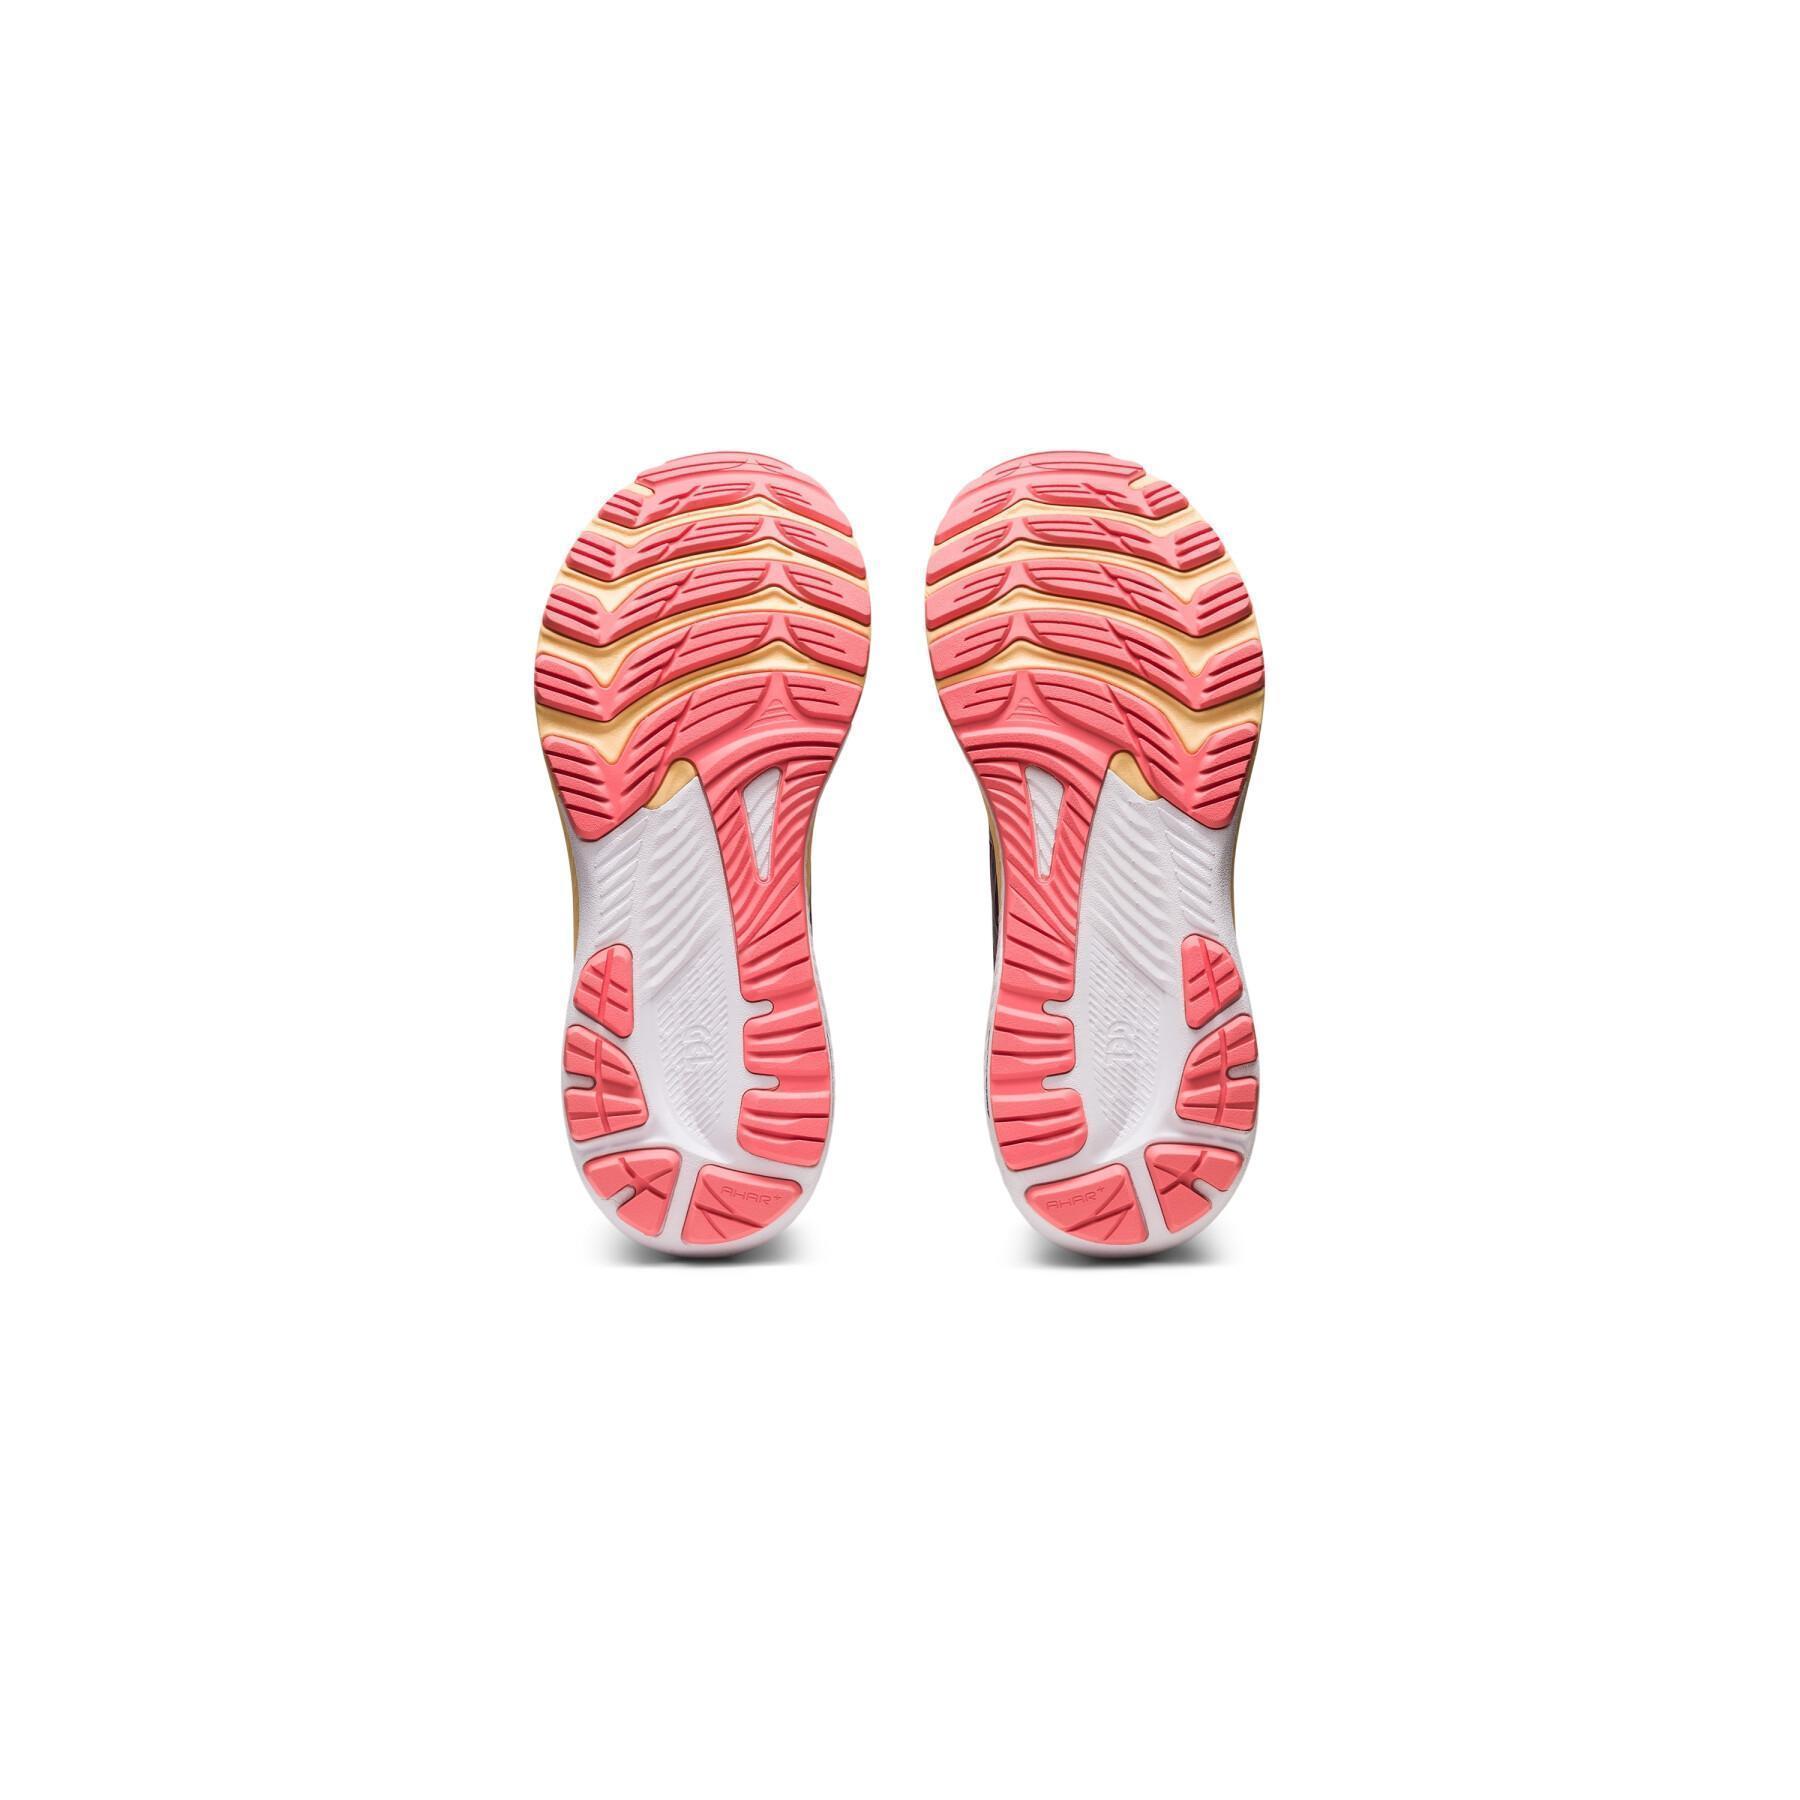 Chaussures de running femme Asics Gel-Kayano 29